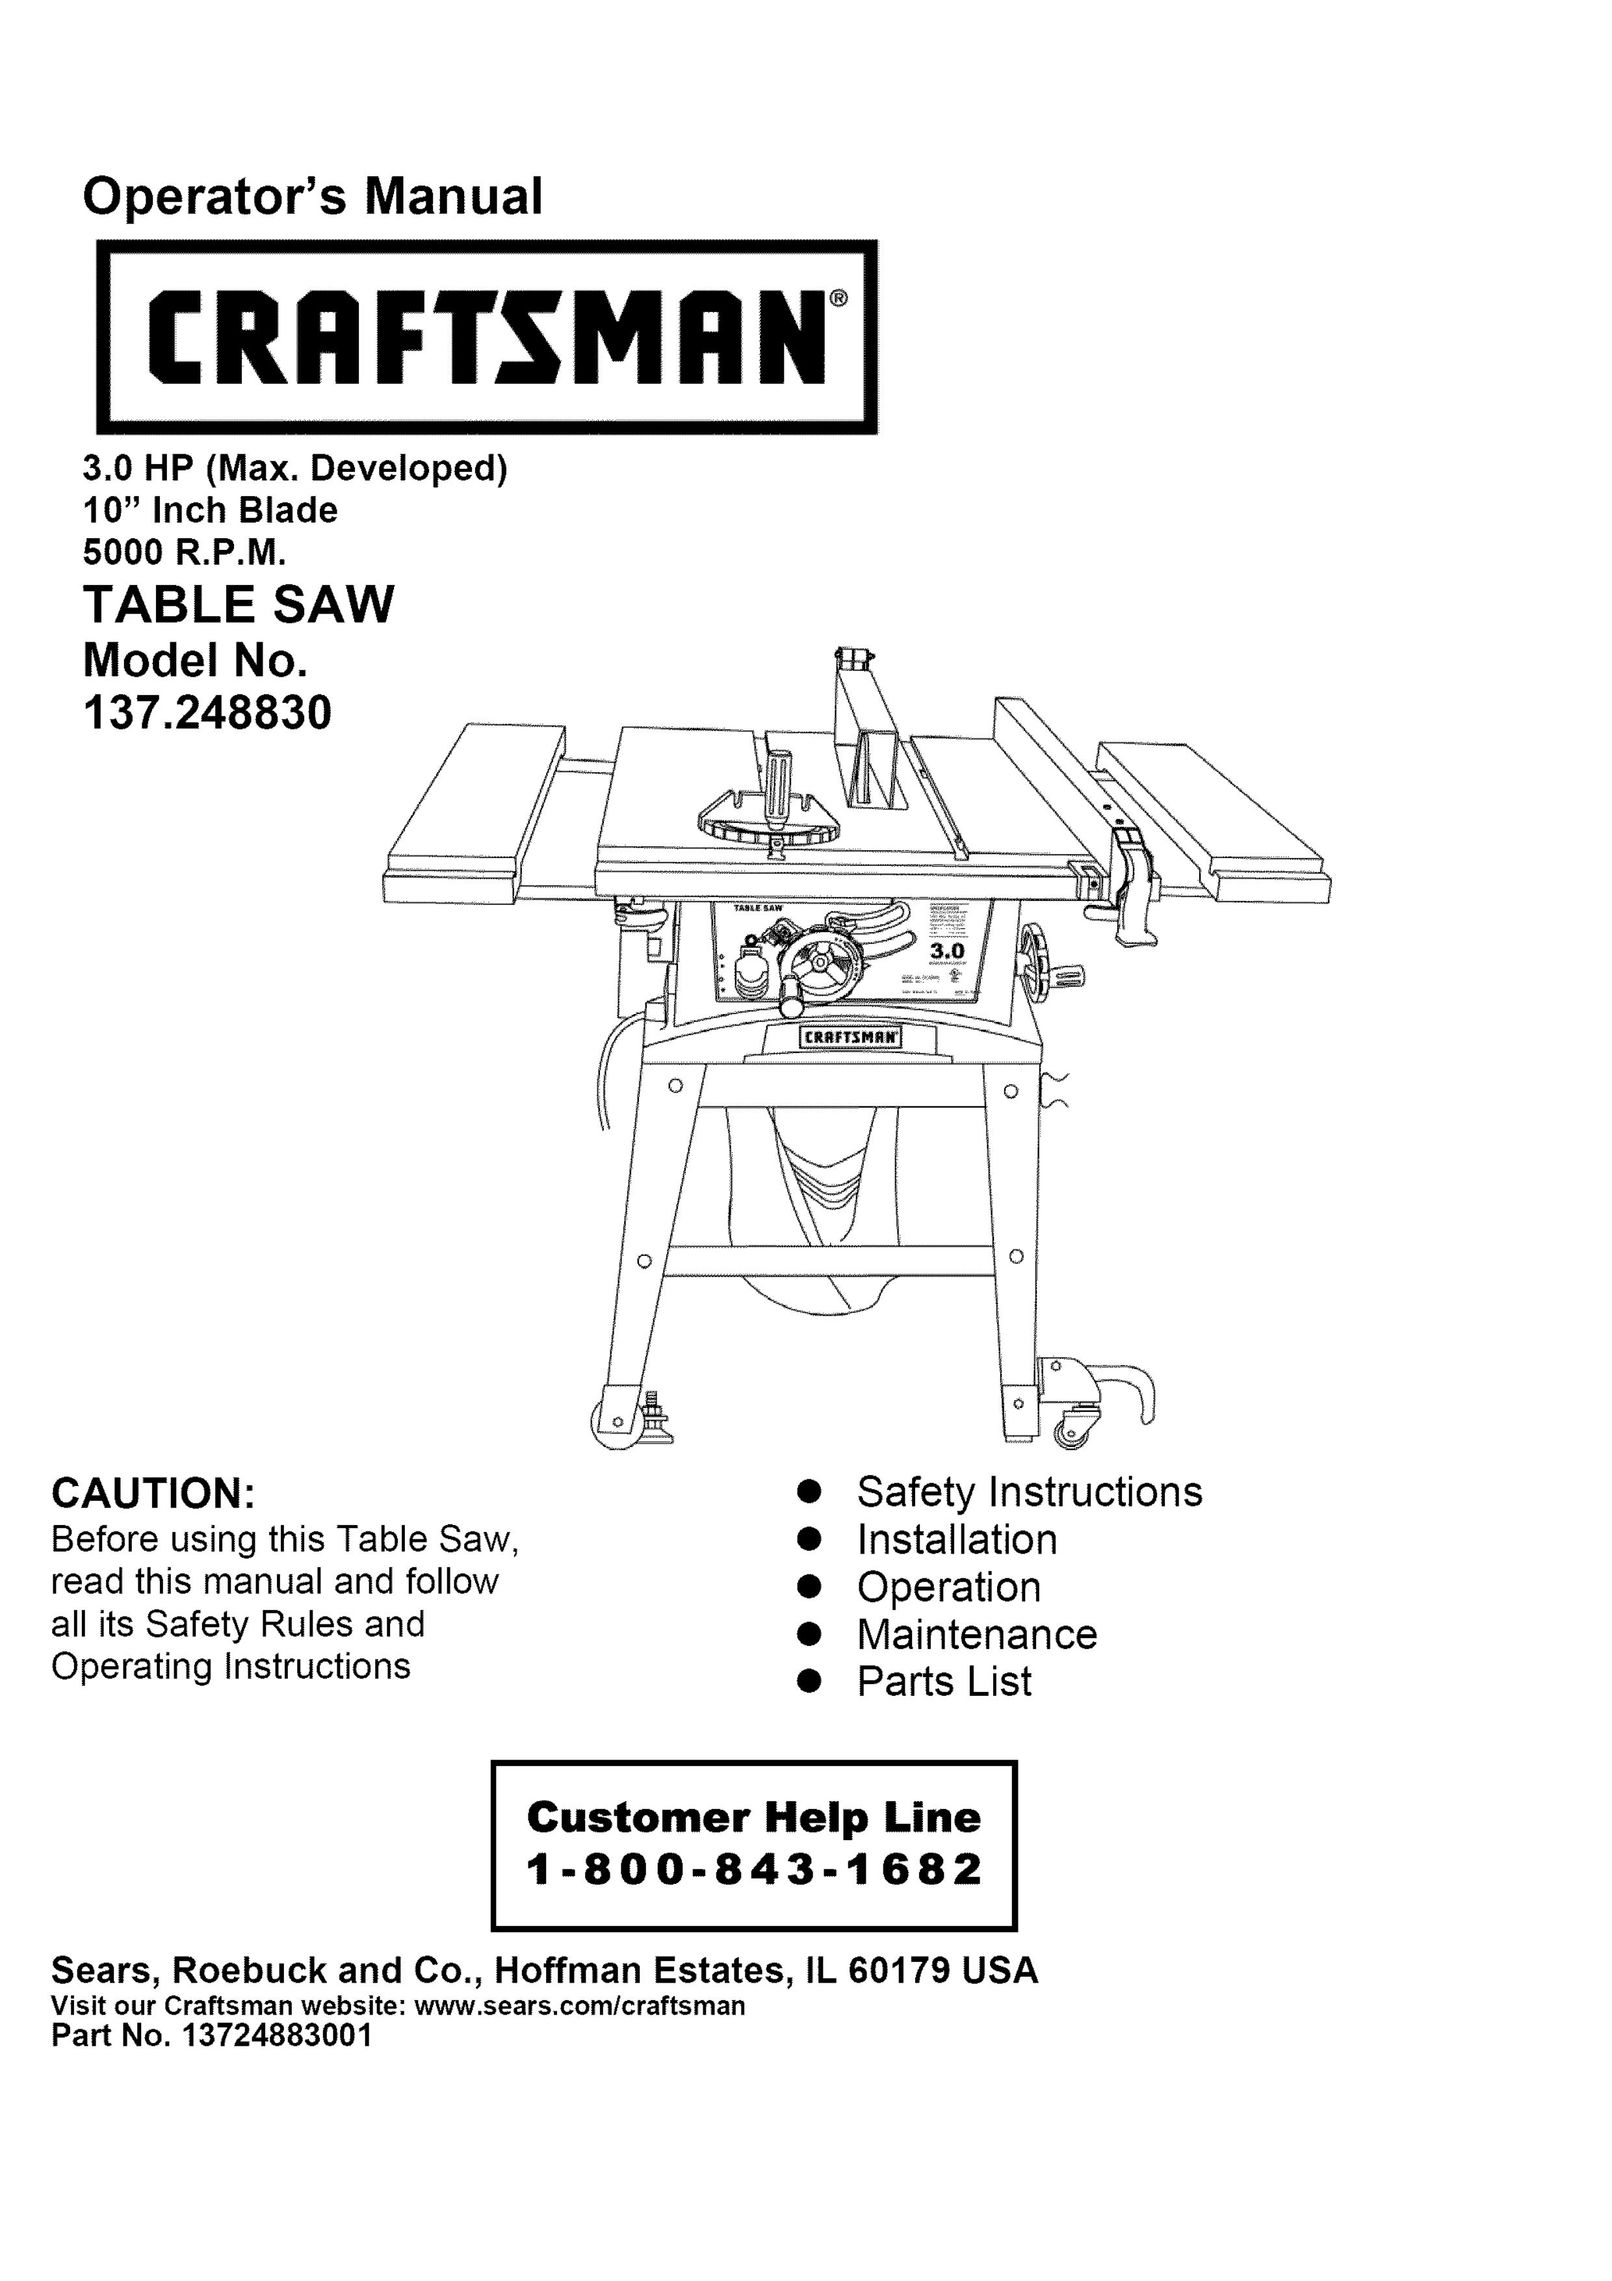 Craftsman 137.248830 Saw User Manual